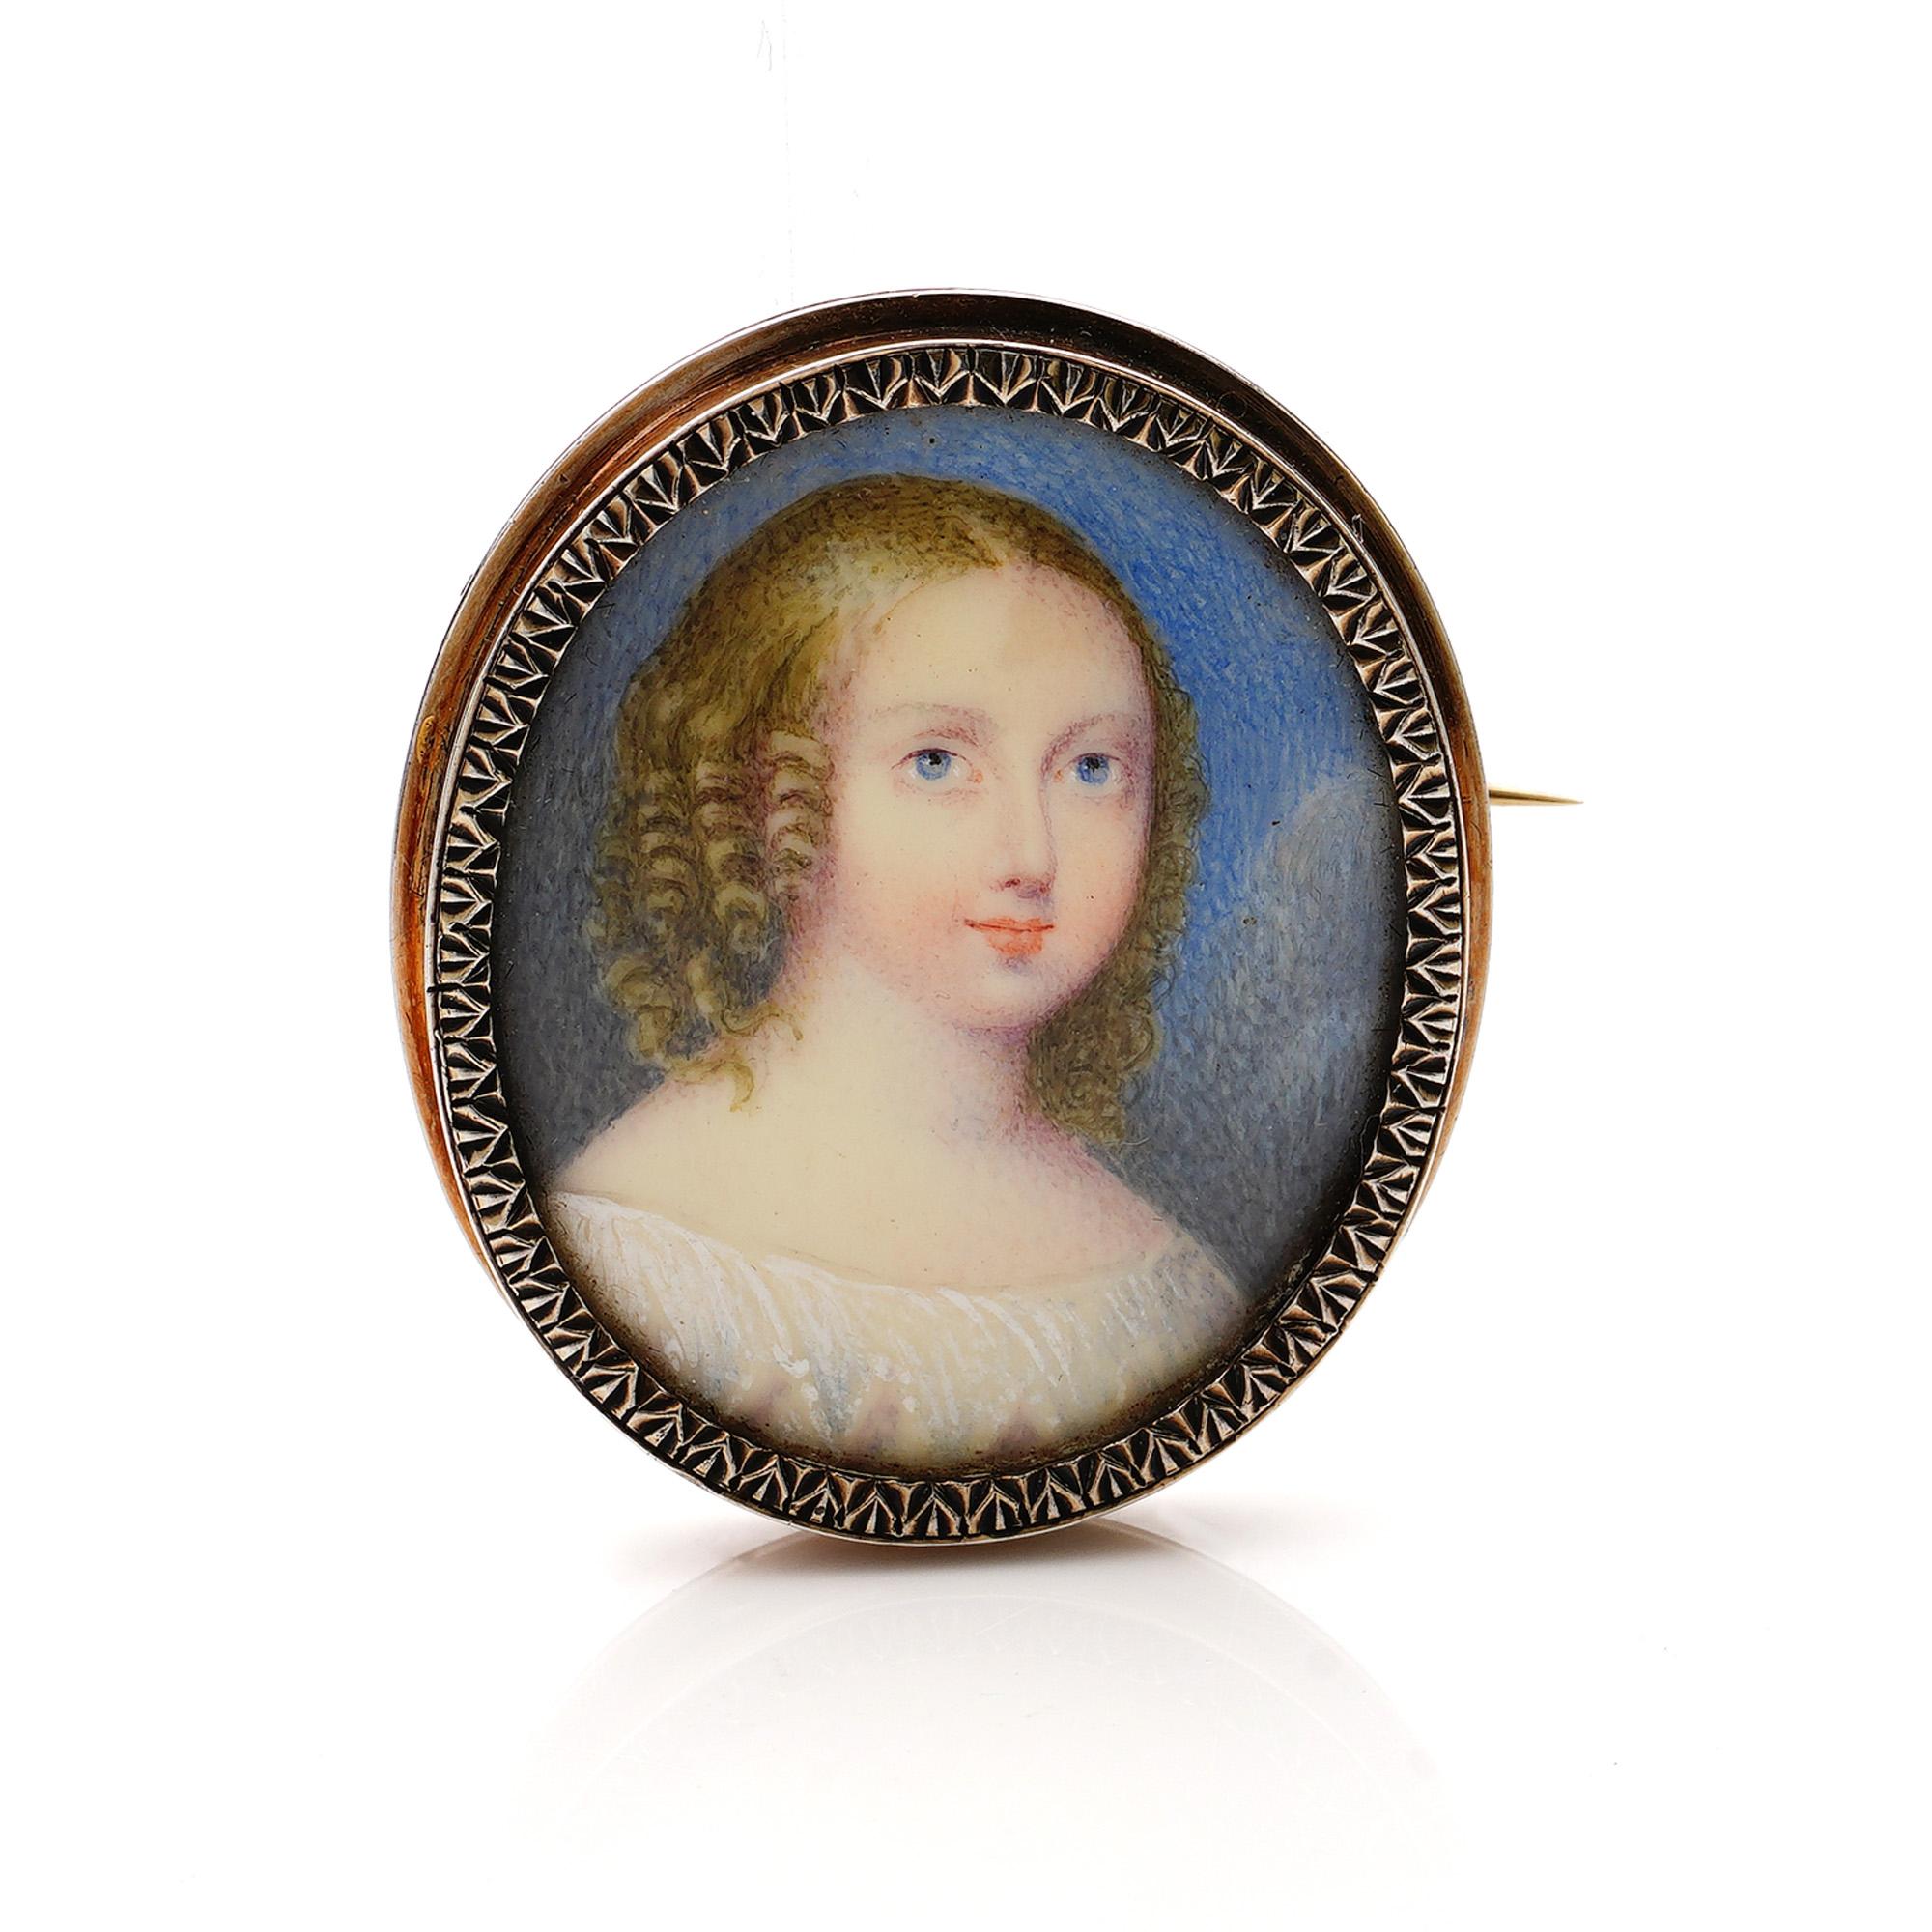 Antike französische 19. Jahrhundert eine junge Prinzessin Louise von Frankreich, später  Herzogin von Berry handgemalte Aquarell-Porträtminiatur, montiert in 950. Silber.
Hergestellt um 1830. 
Gepunzt auf der Silberspange mit Eberkopf (französischer